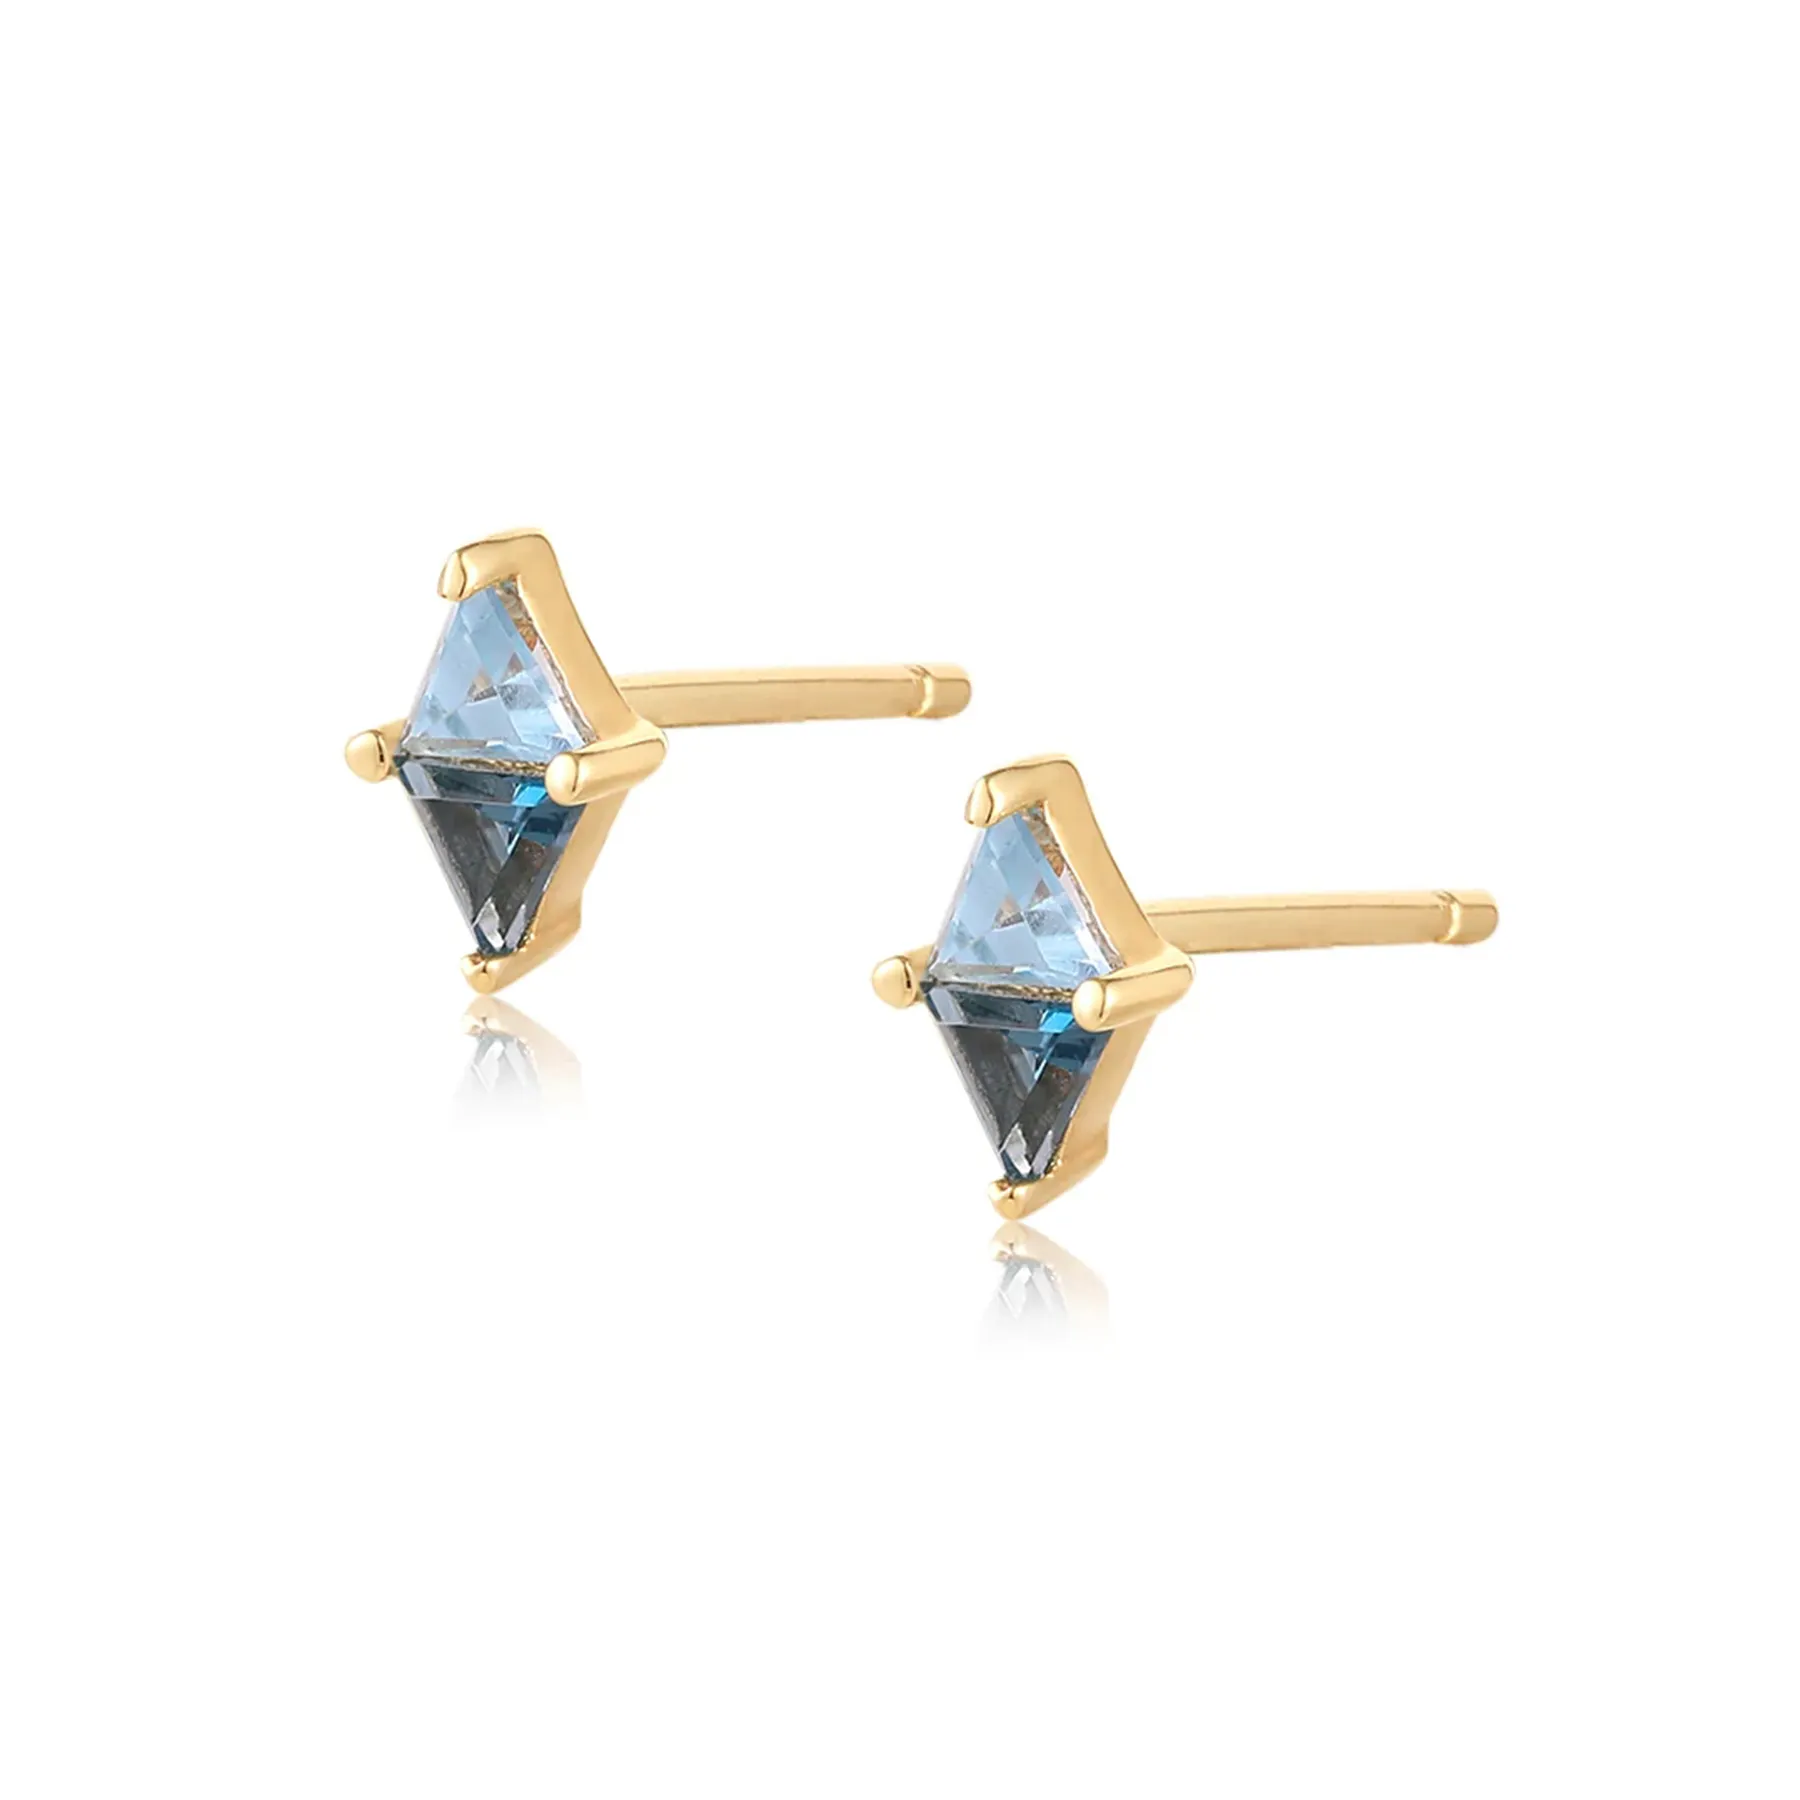 925 silver earrings 14k gold plated trillion cut blue topaz stud earrings women